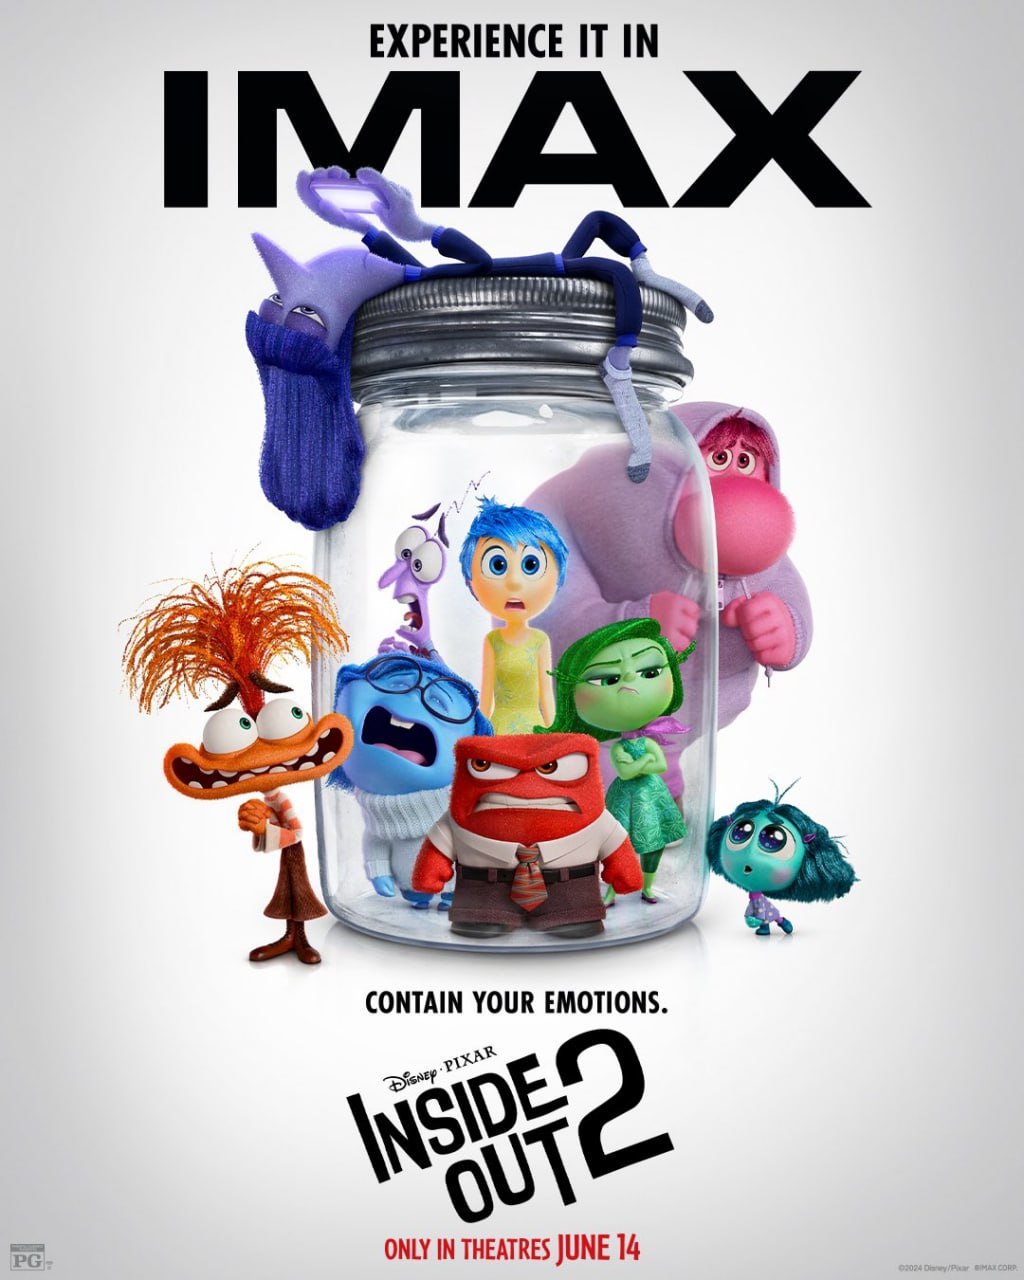 پوستر رسمی IMAX برای Inside Out 2 